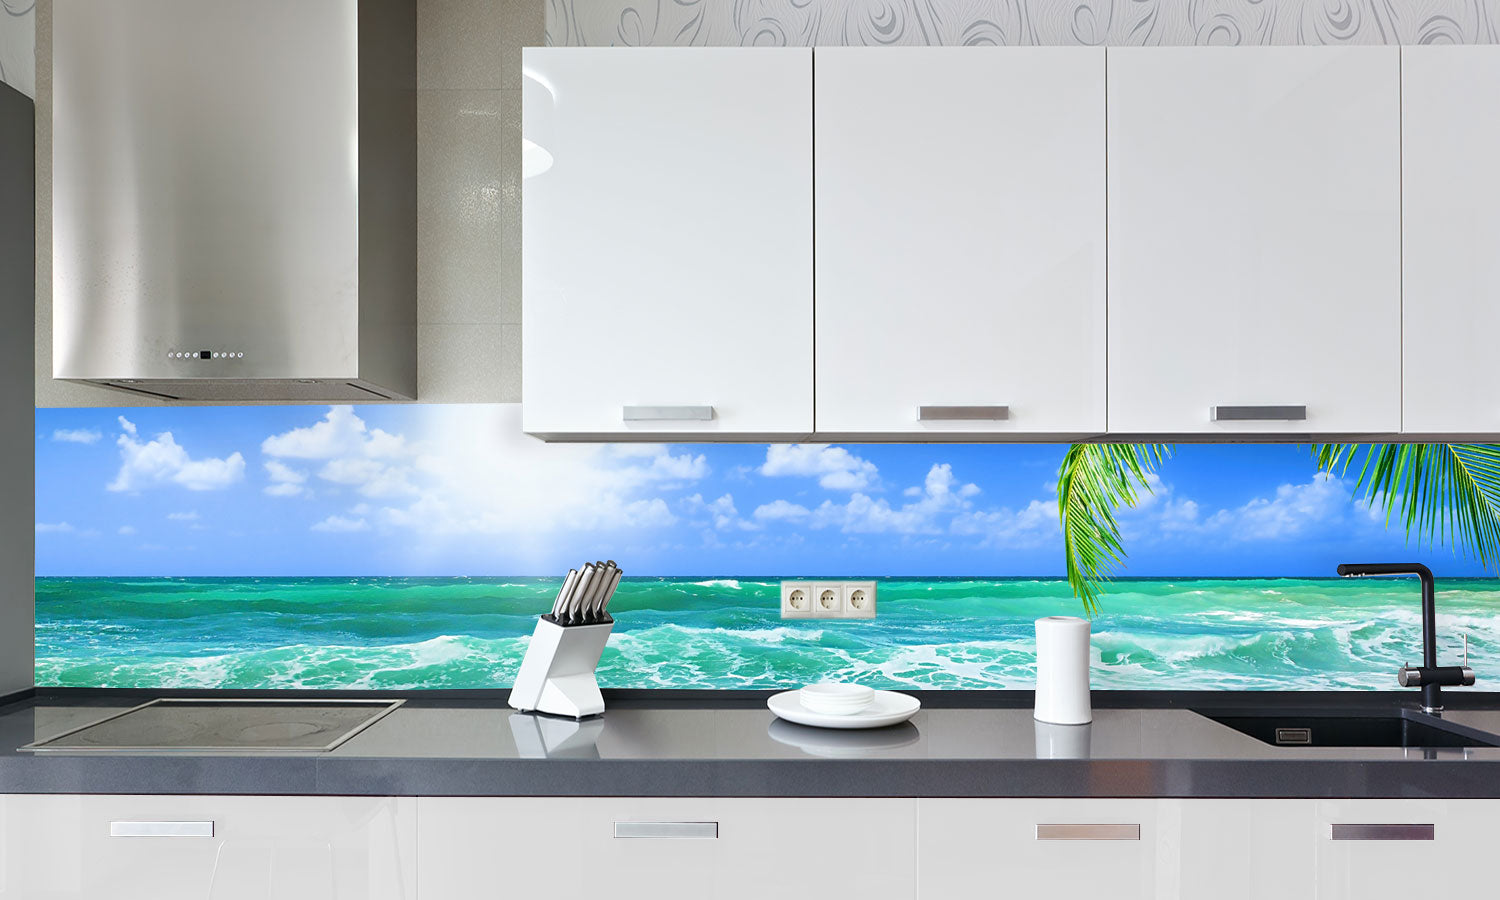 Kuhinjski paneli Beautiful beach - Stekleni / PVC plošče / Pleksi steklo - s tiskom za kuhinjo, Stenske obloge PKU0232 - Life-decor.si